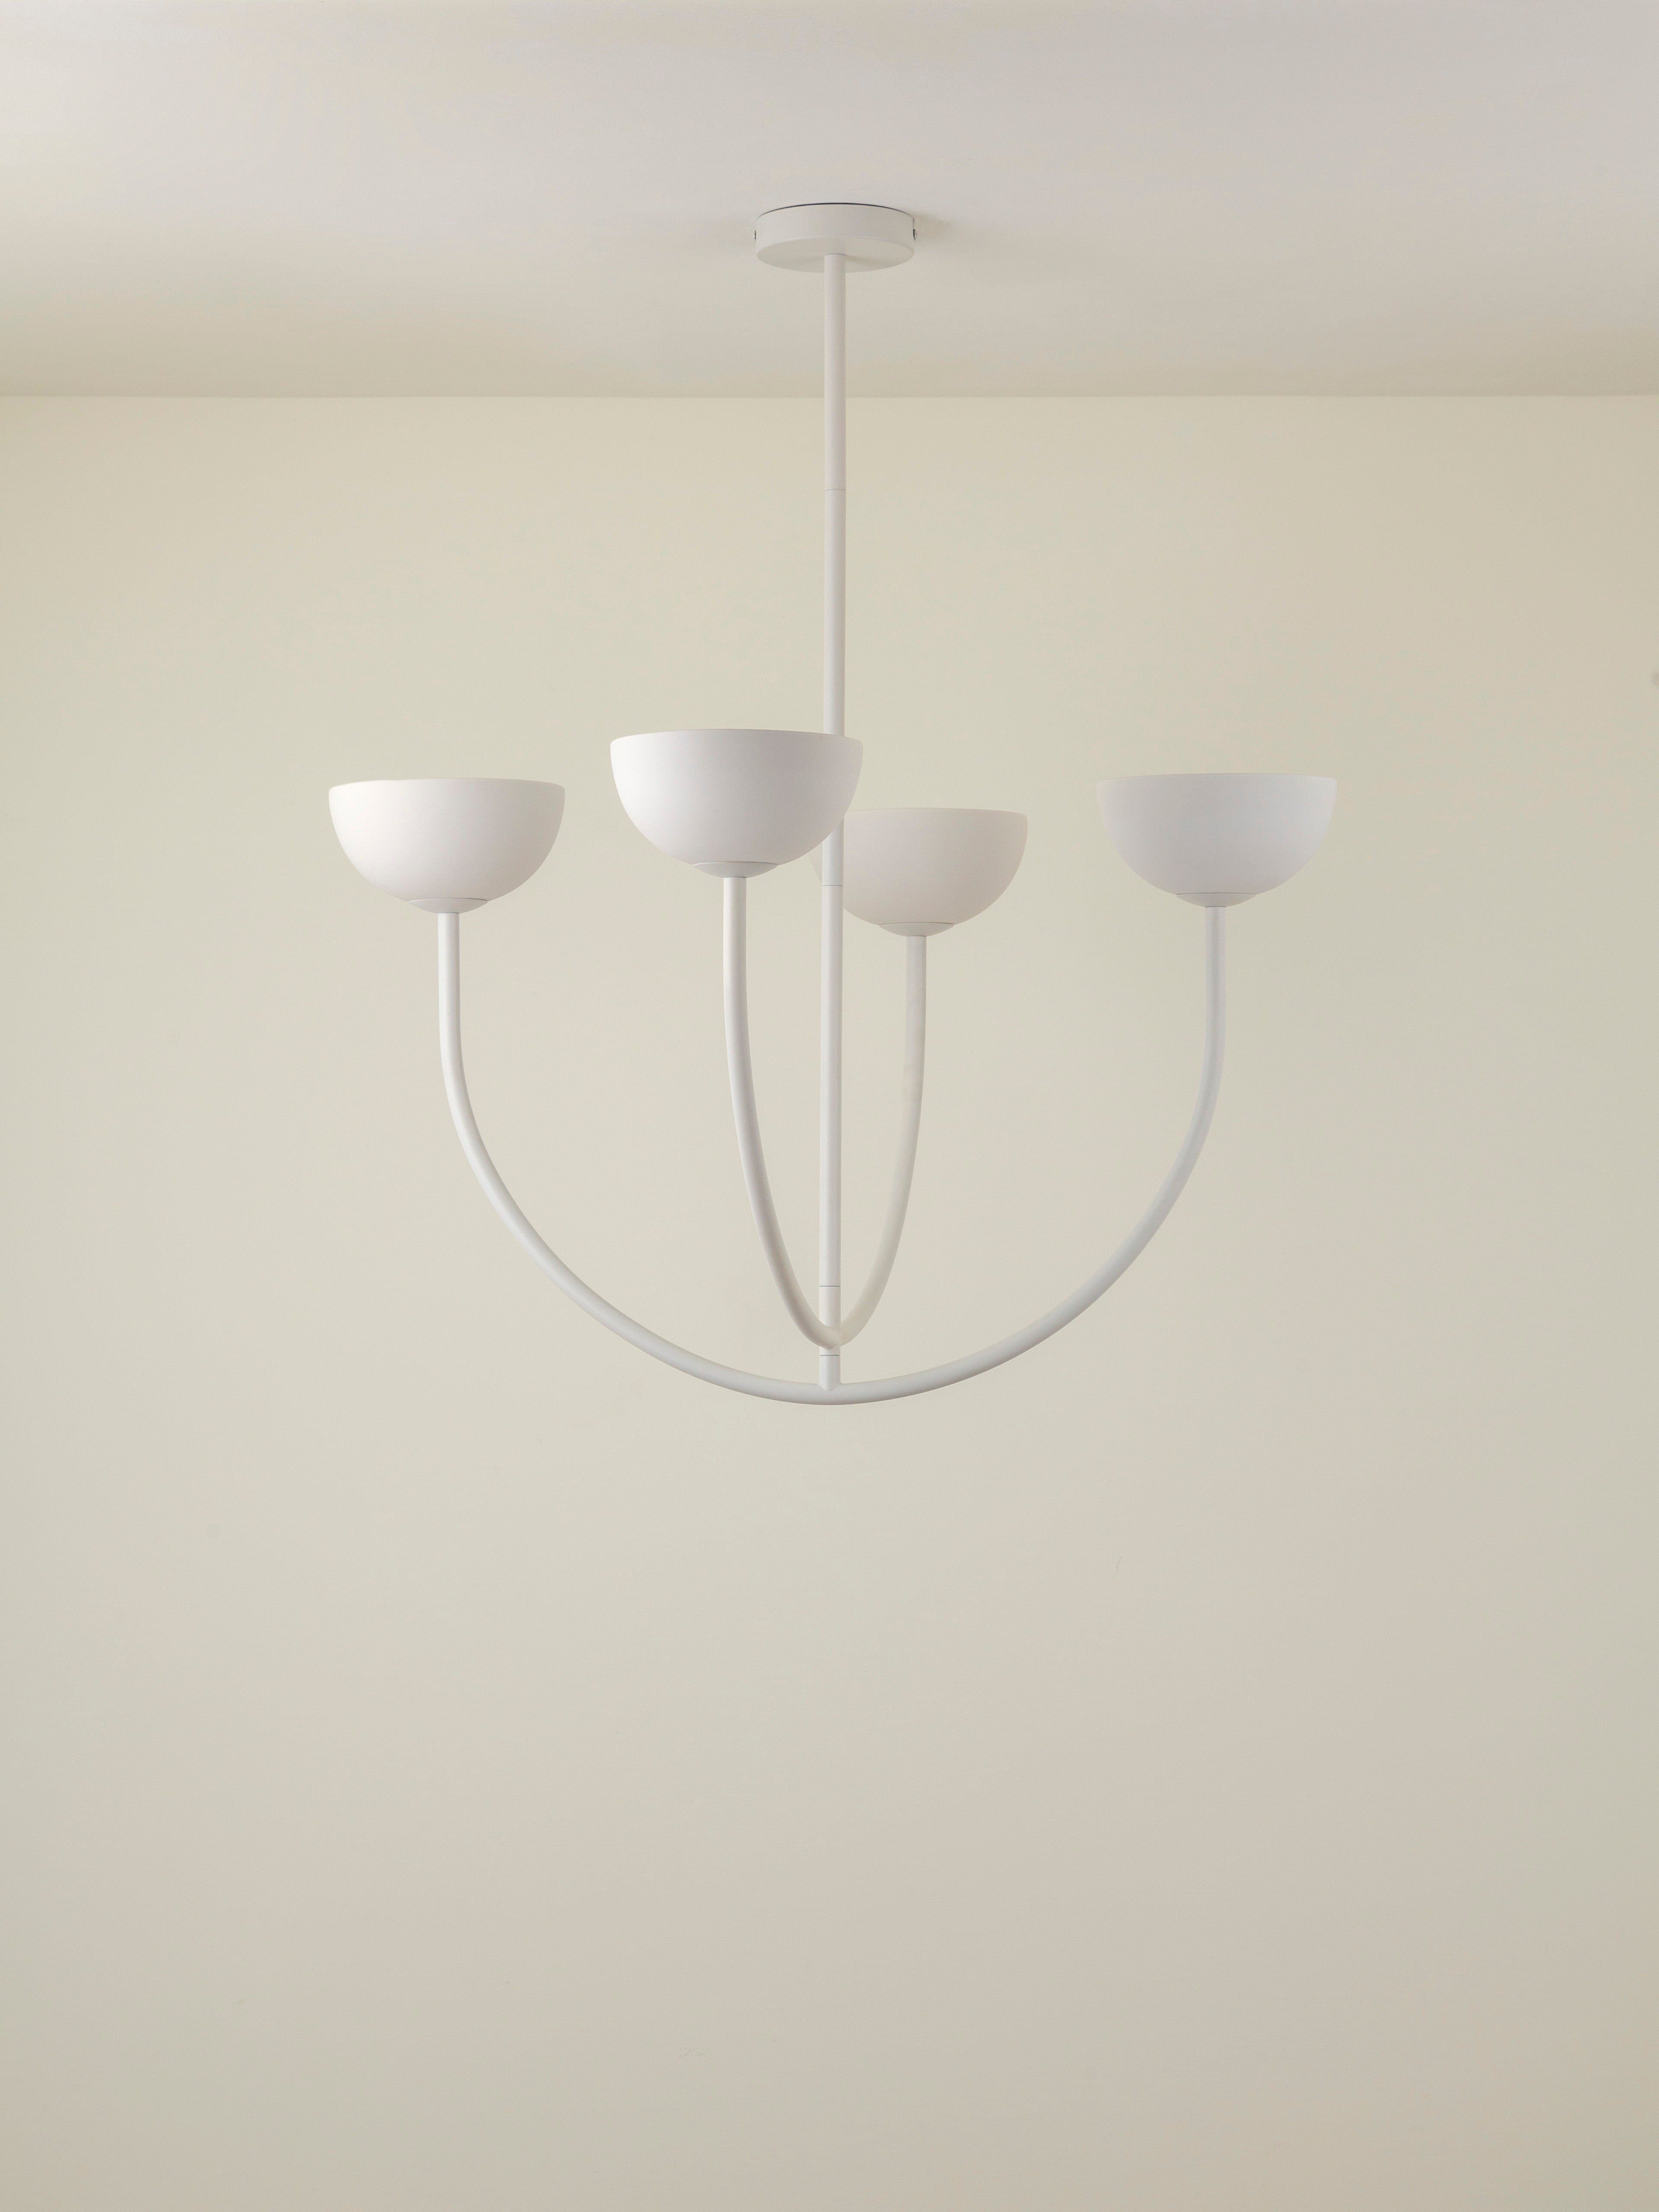 Ruzo - 4 light warm white porcelain ceiling pendant | Chandelier | Lights & Lamps Inc | Modern Affordable Designer Lighting | USA